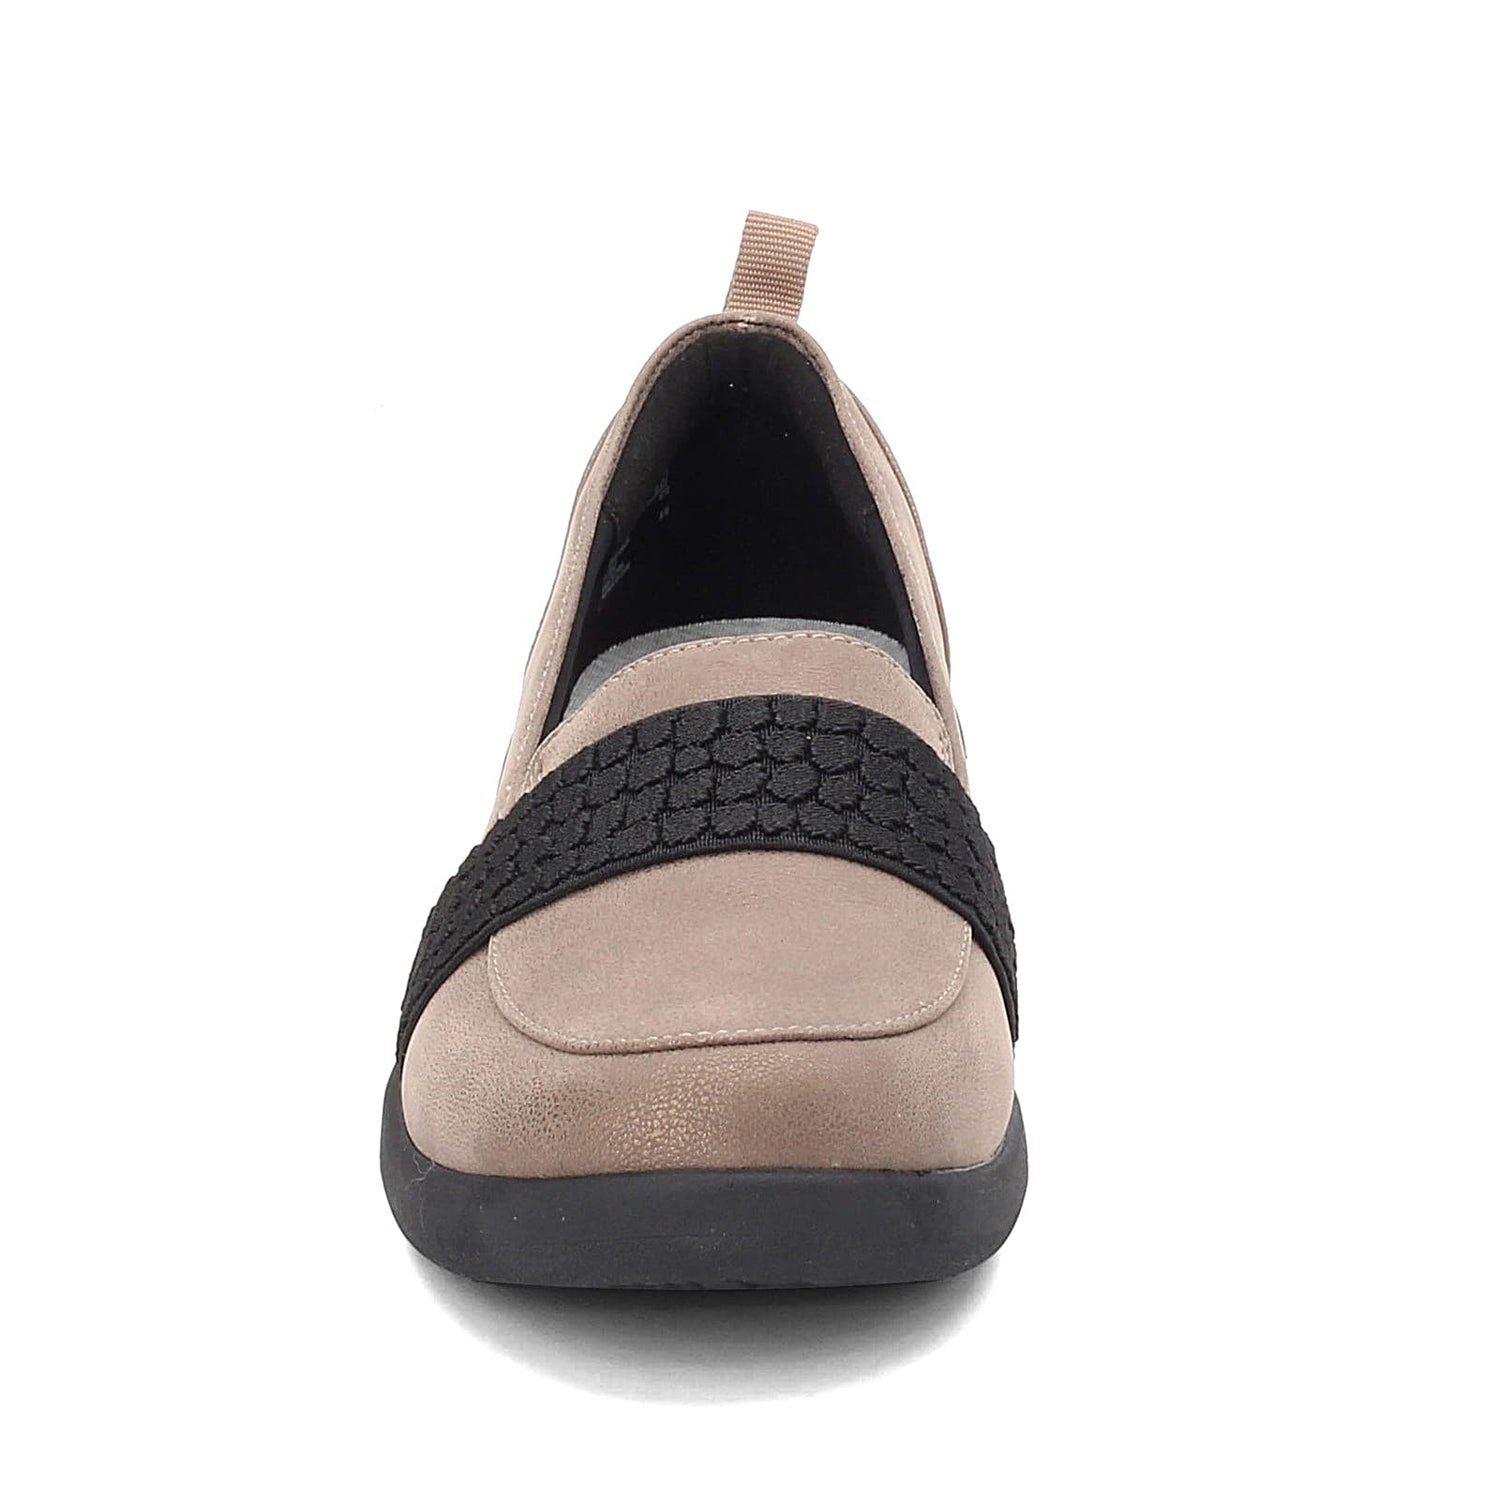 Peltz Shoes  Women's Clarks Sillian 2.0 Zest Loafer